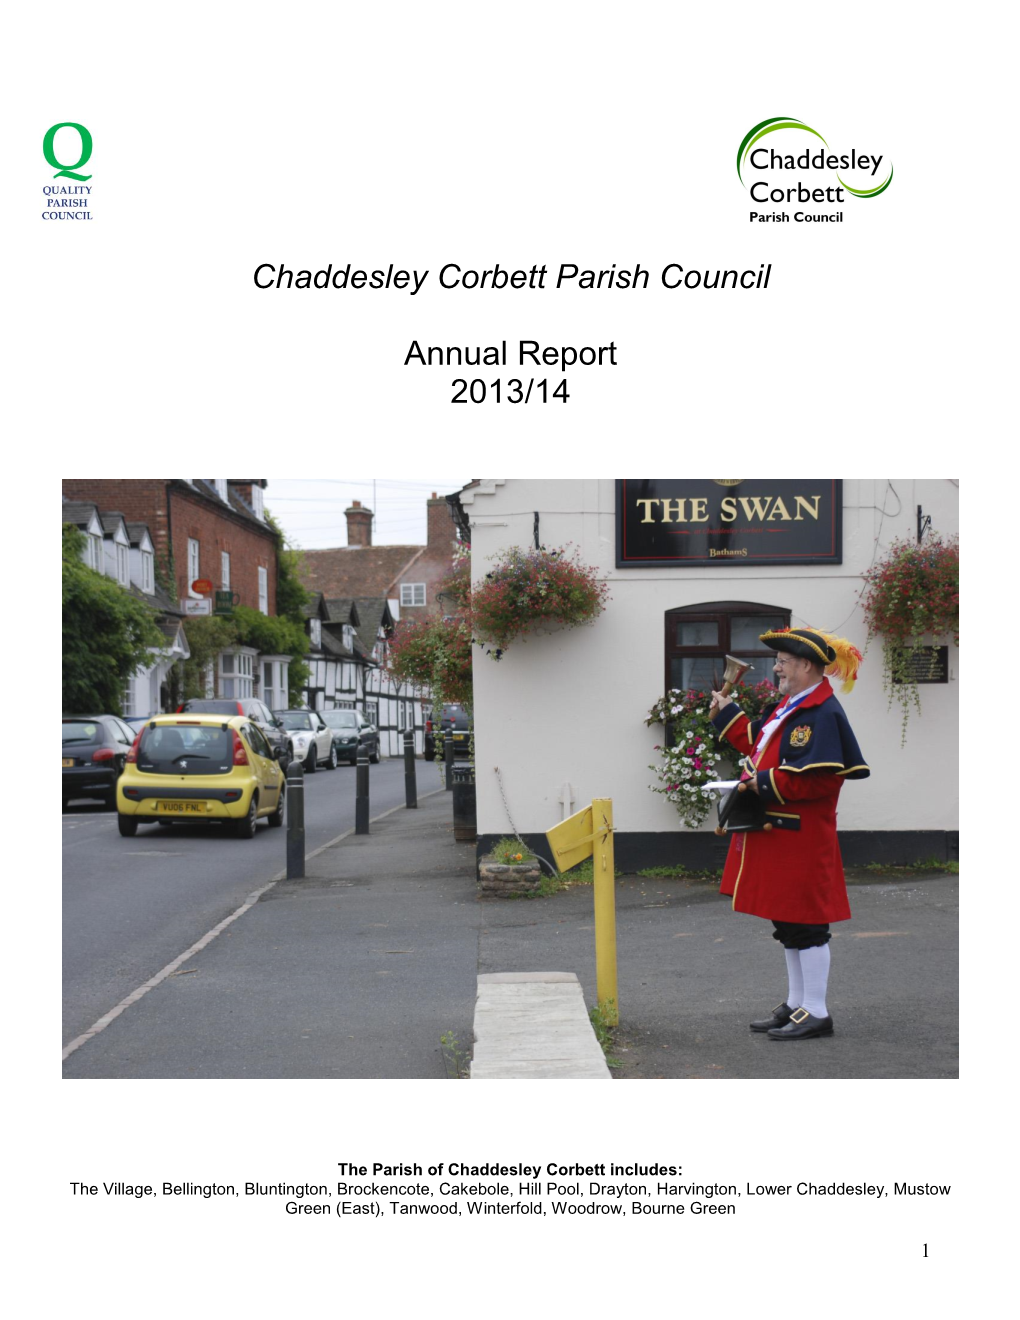 Chaddesley Corbett Parish Council Annual Report 2013/14